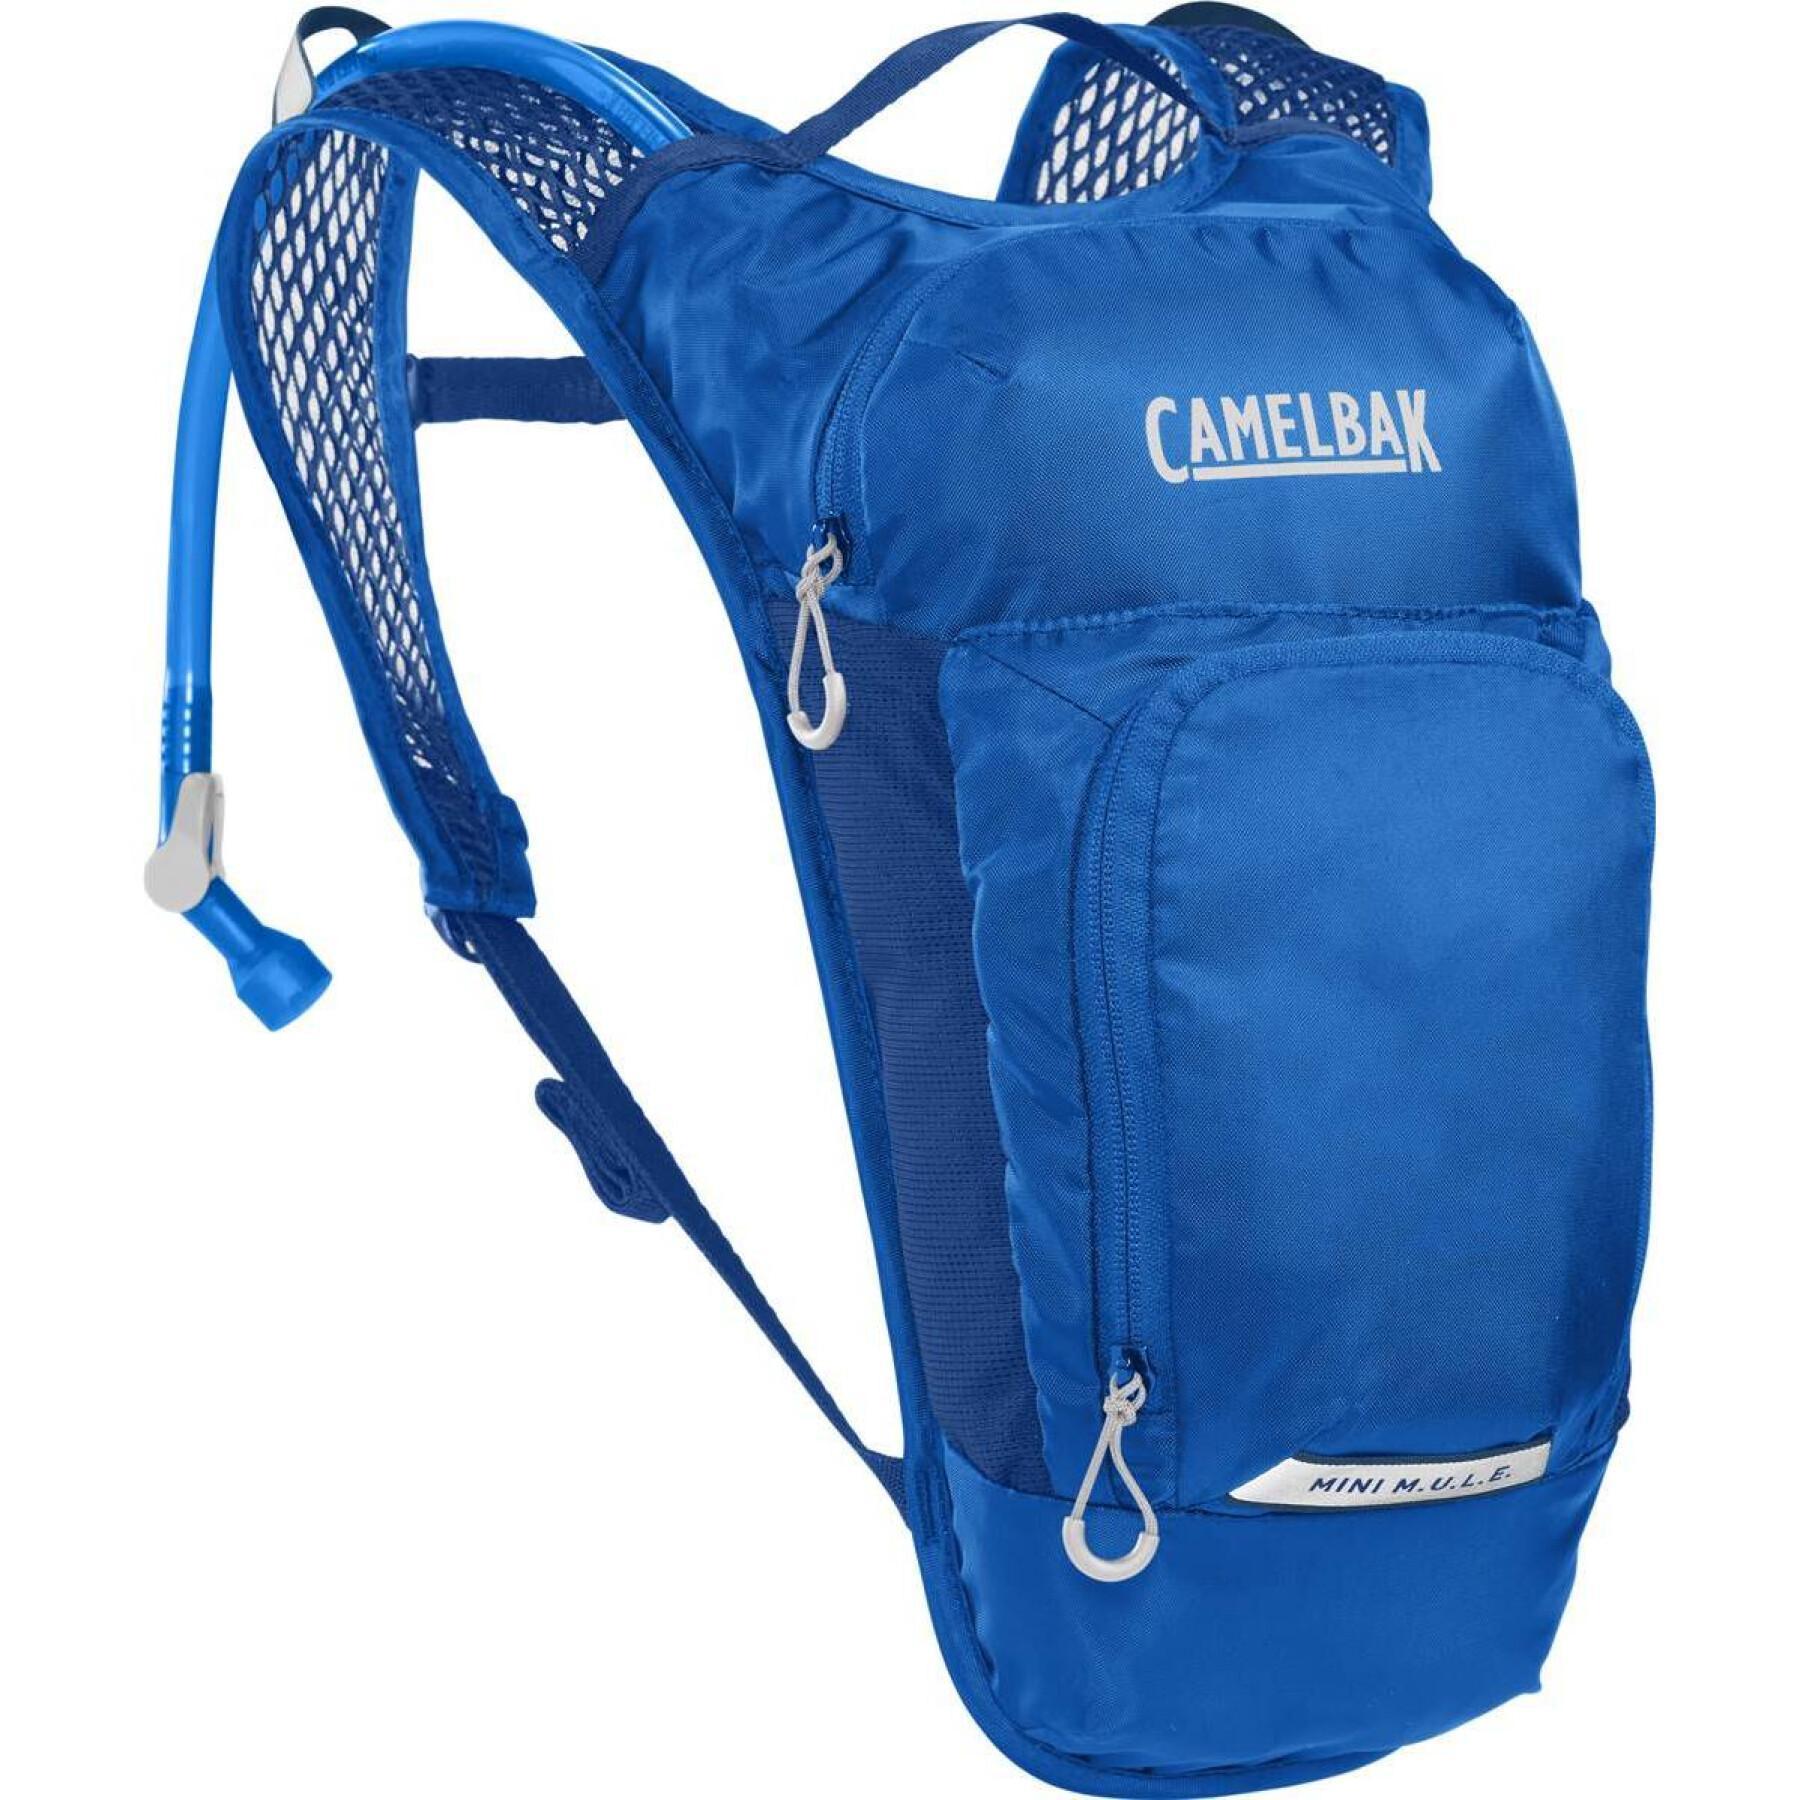 Children's mini mule backpack Camelbak